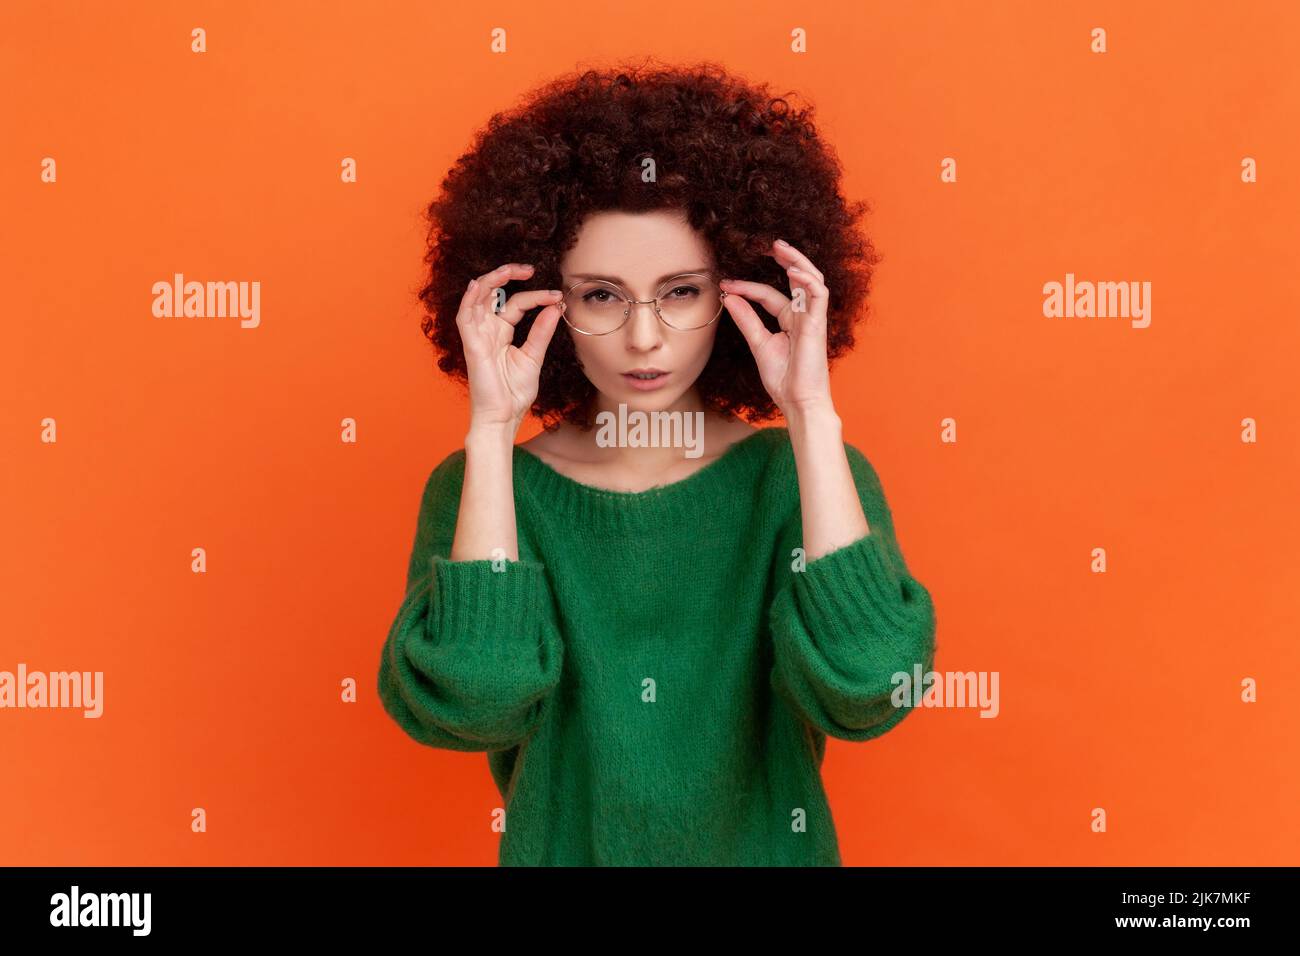 Porträt einer aufmerksamen schönen Frau mit Afro-Frisur tragen grünen lässigen Stil Pullover stehend Brille und Blick auf die Kamera. Innenaufnahme des Studios isoliert auf orangefarbenem Hintergrund. Stockfoto